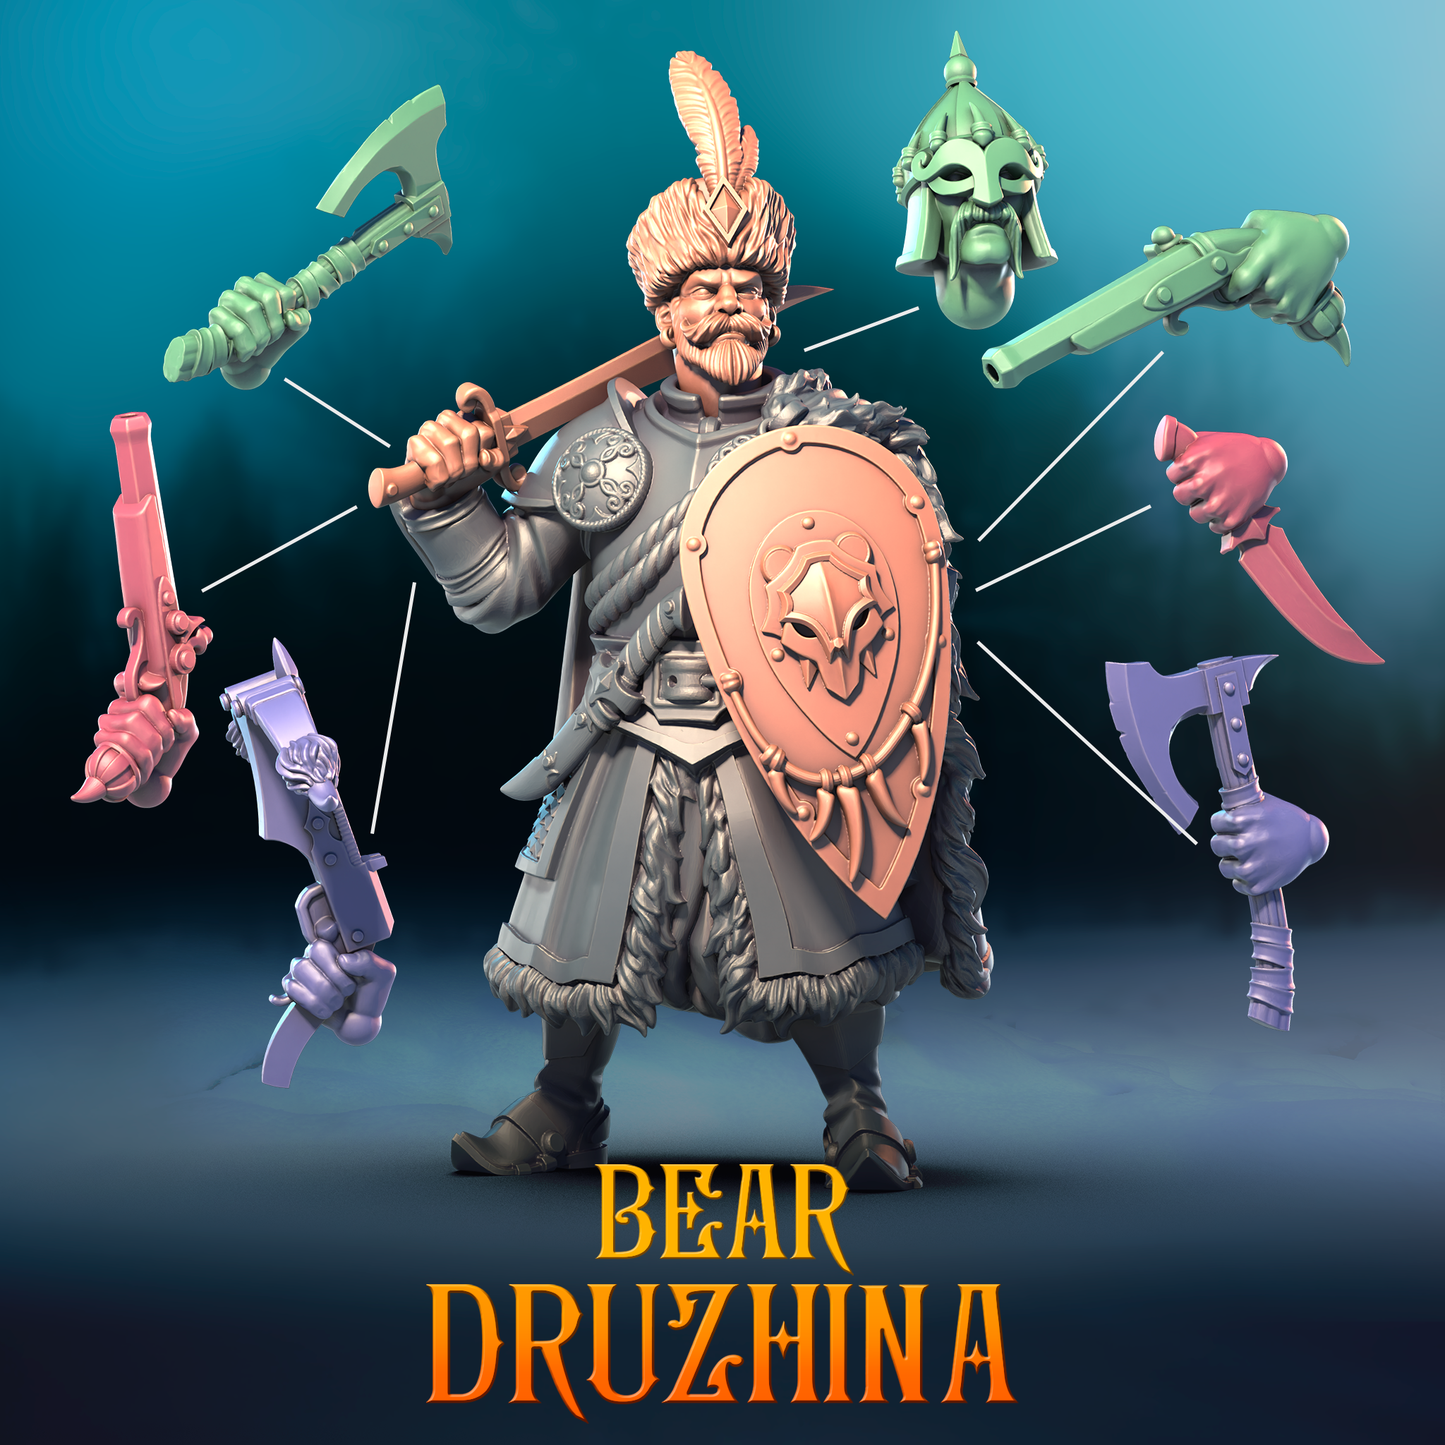 The Bear Druzhina Warband